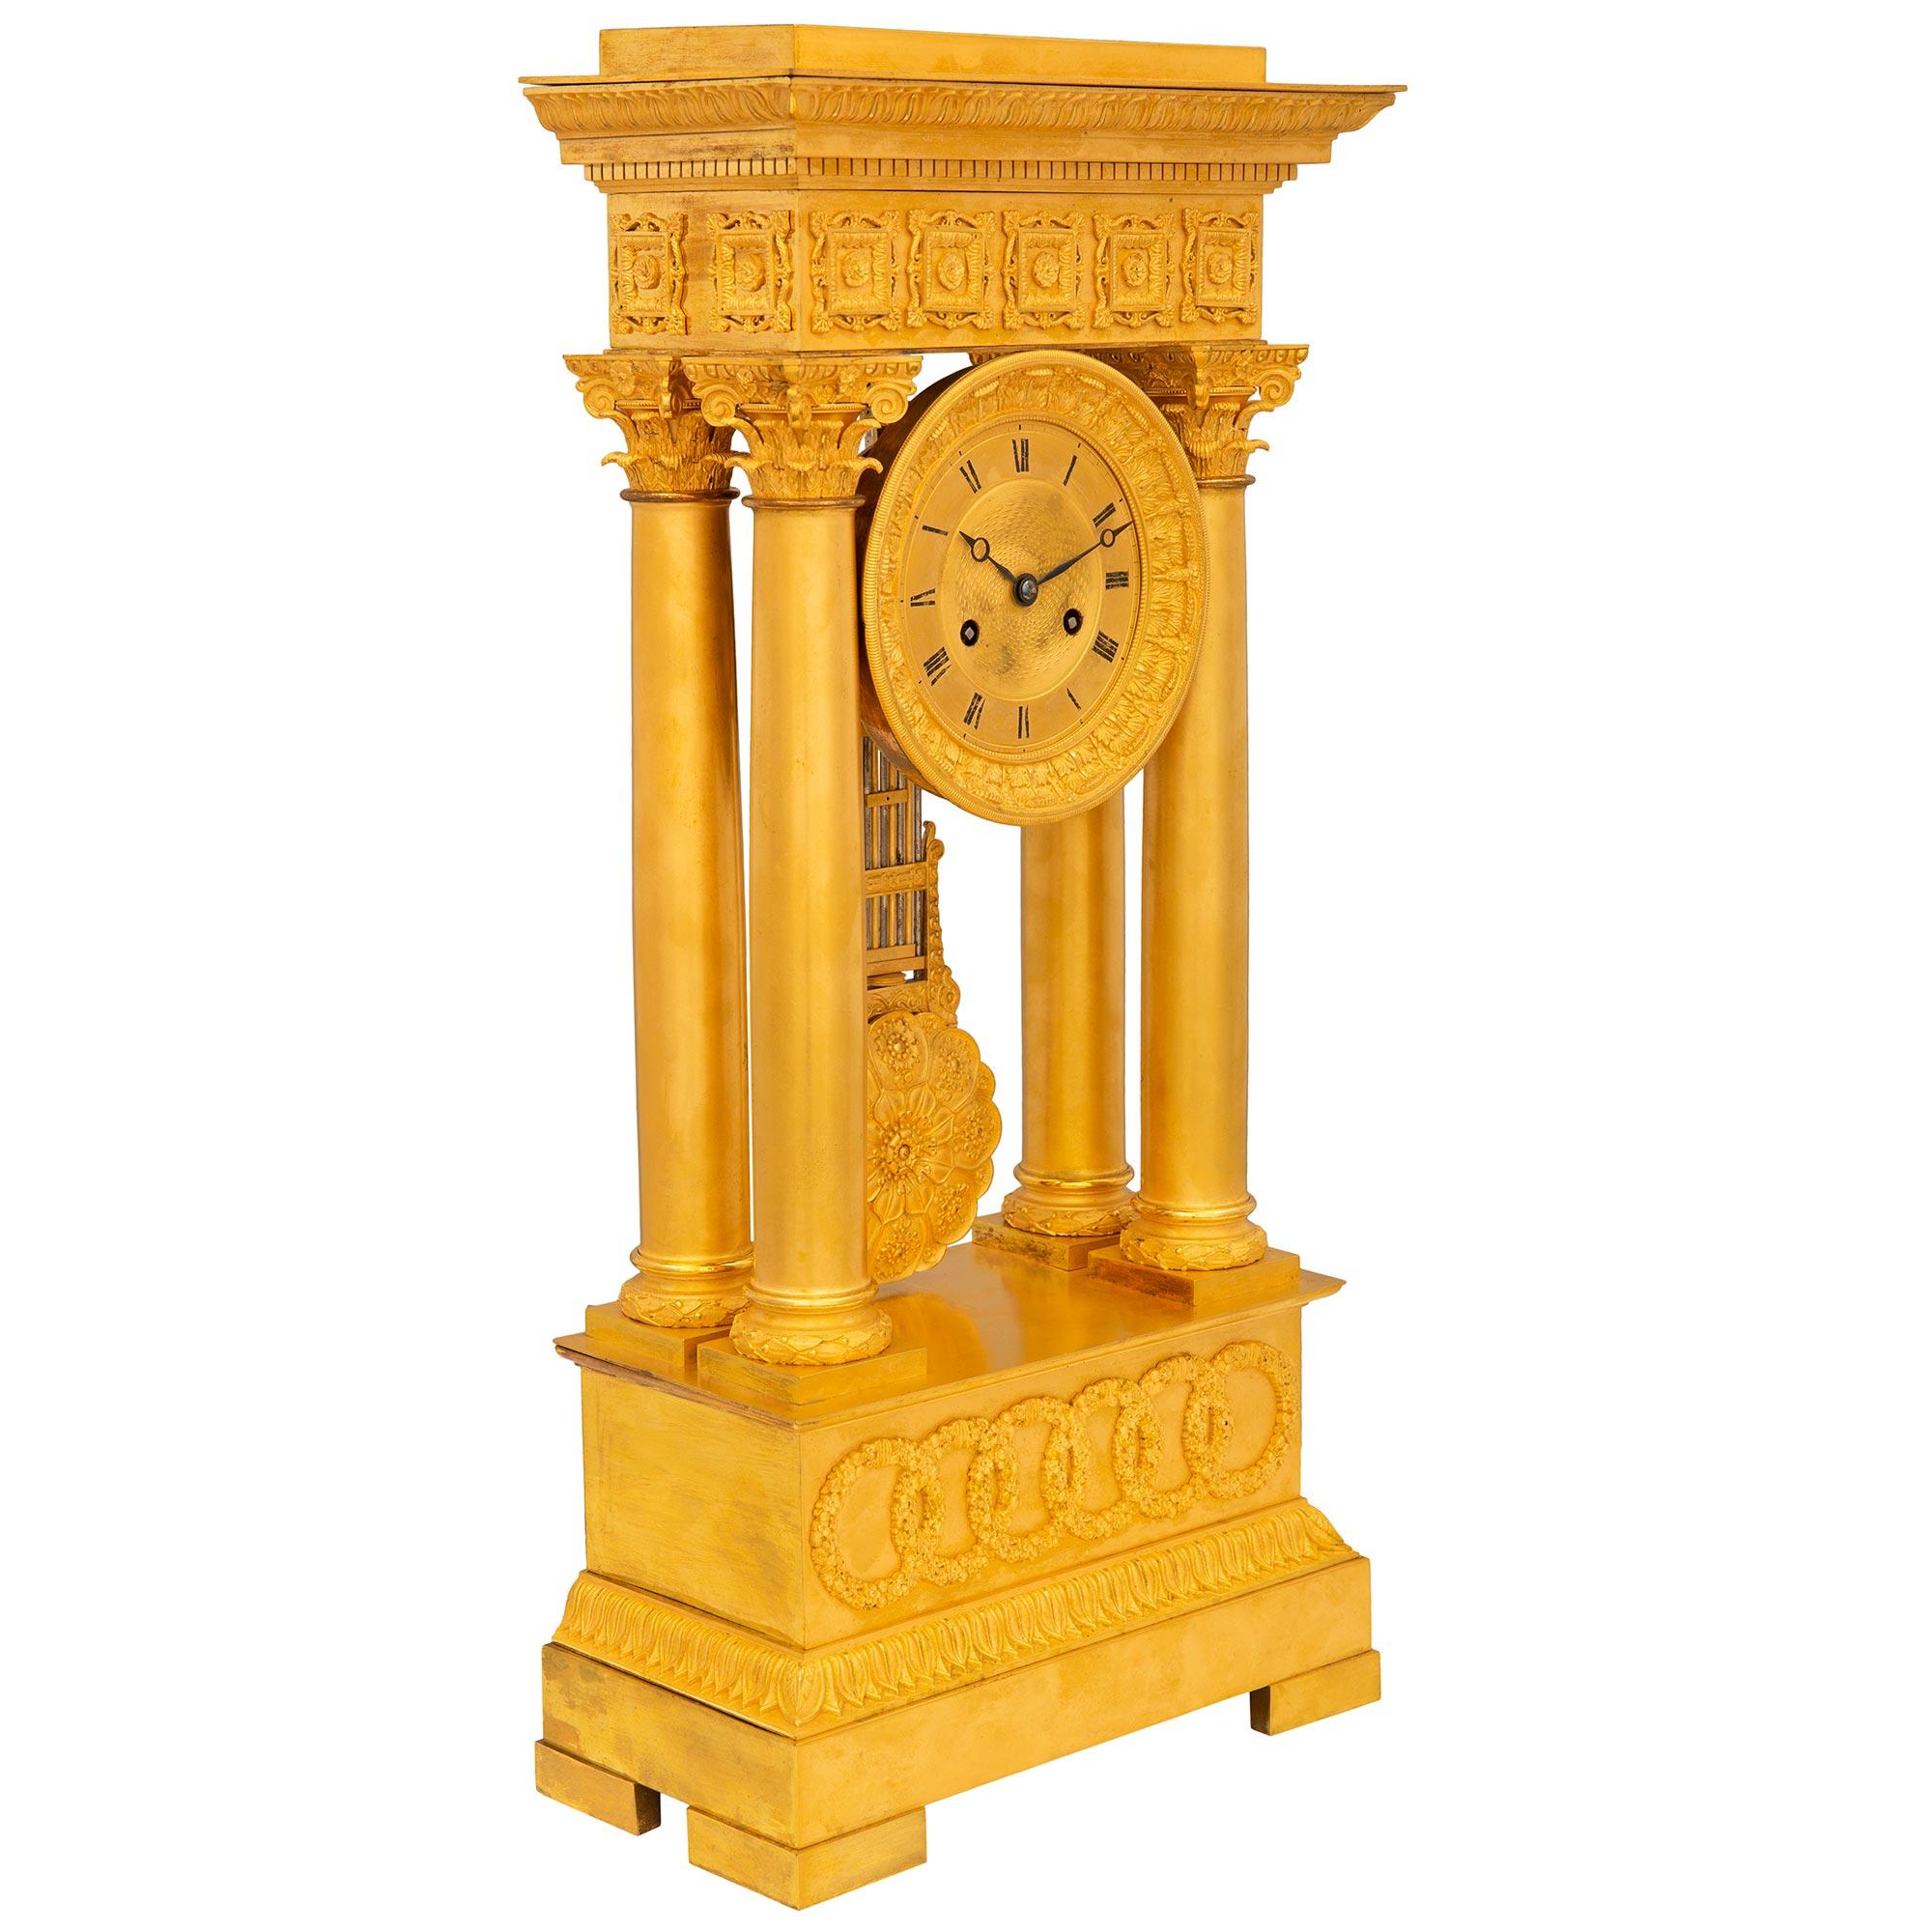 Une exquise horloge portique française du milieu du 19ème siècle, de style Empire en bronze doré. L'horloge repose sur une base rectangulaire avec des bordures finement ciselées et des cercles imbriqués satinés et brunis. Au-dessus se trouvent